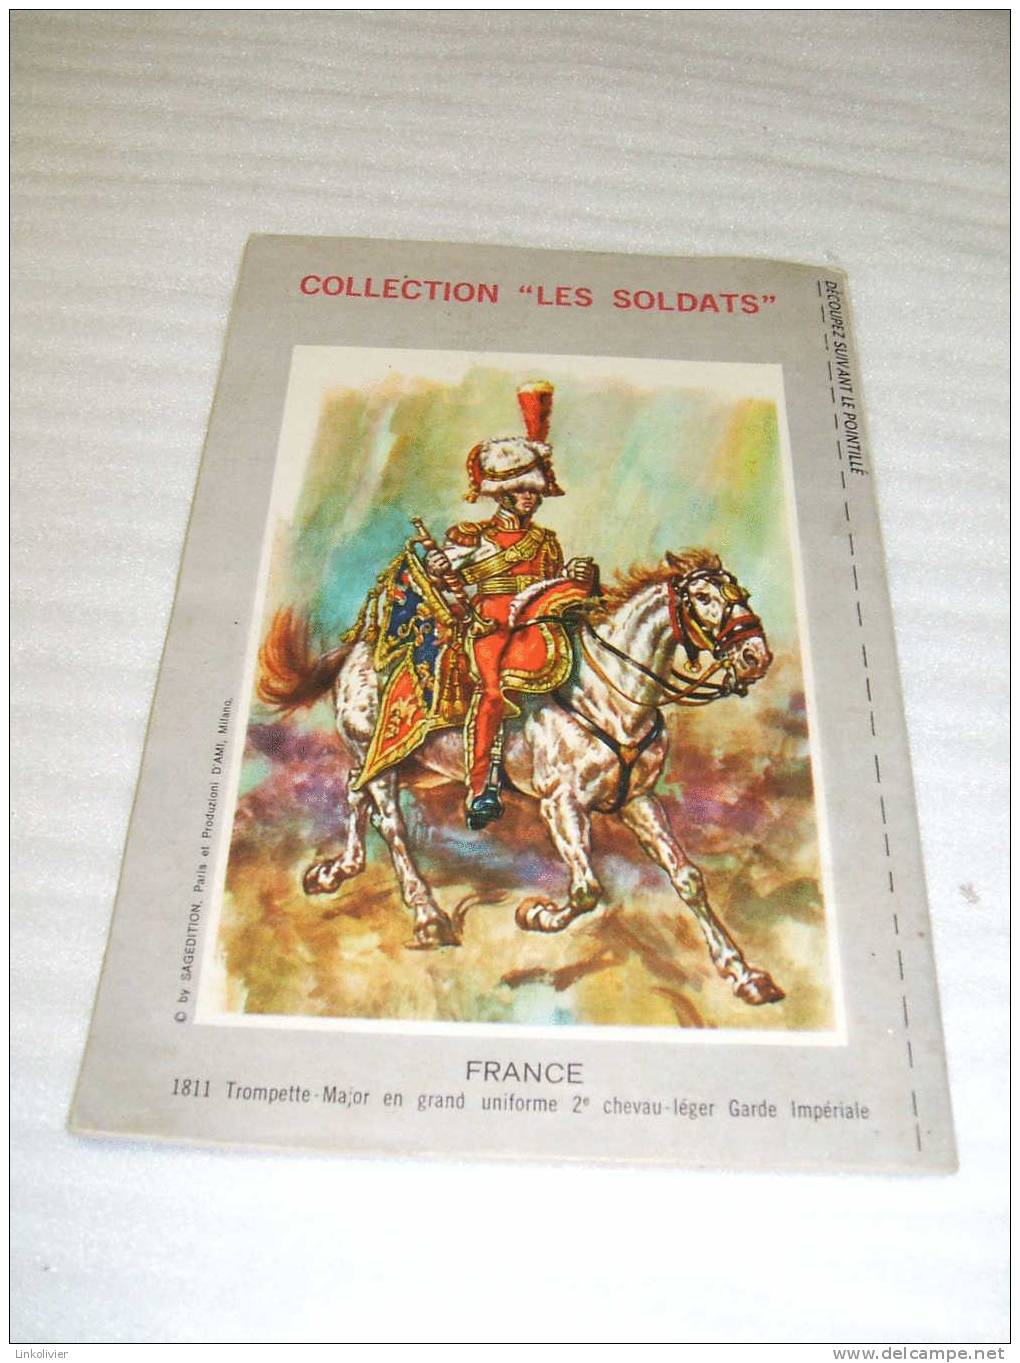 TOM Et JERRY Mensuel N° 56 - SAGEDITION 1972 - Dos Vignette Soldat De La Garde Impériale 1811 - Sagédition